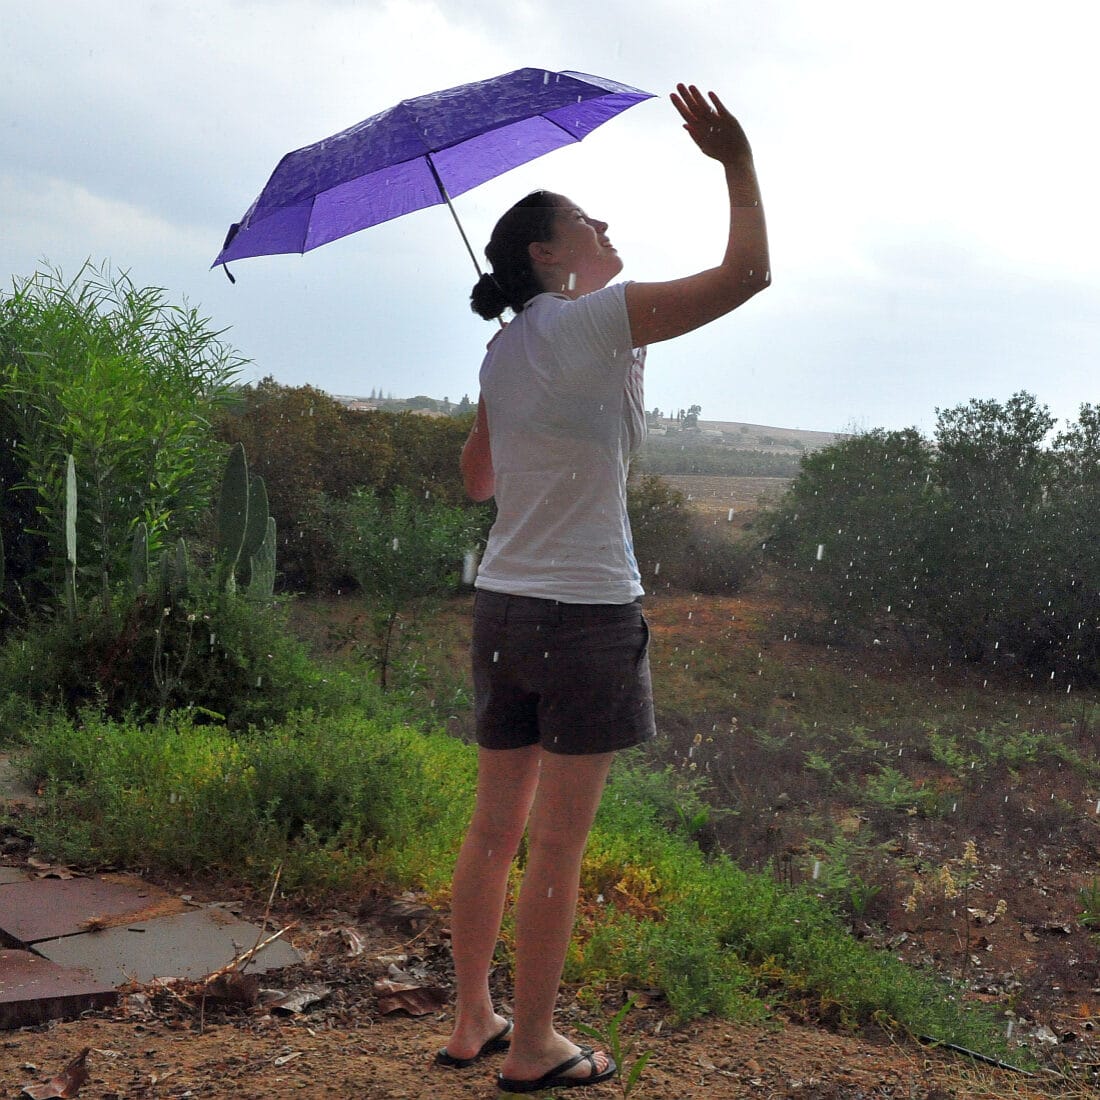 Rain may encourage biodiversity. Photo by ChameleonsEye via Shutterstock.com